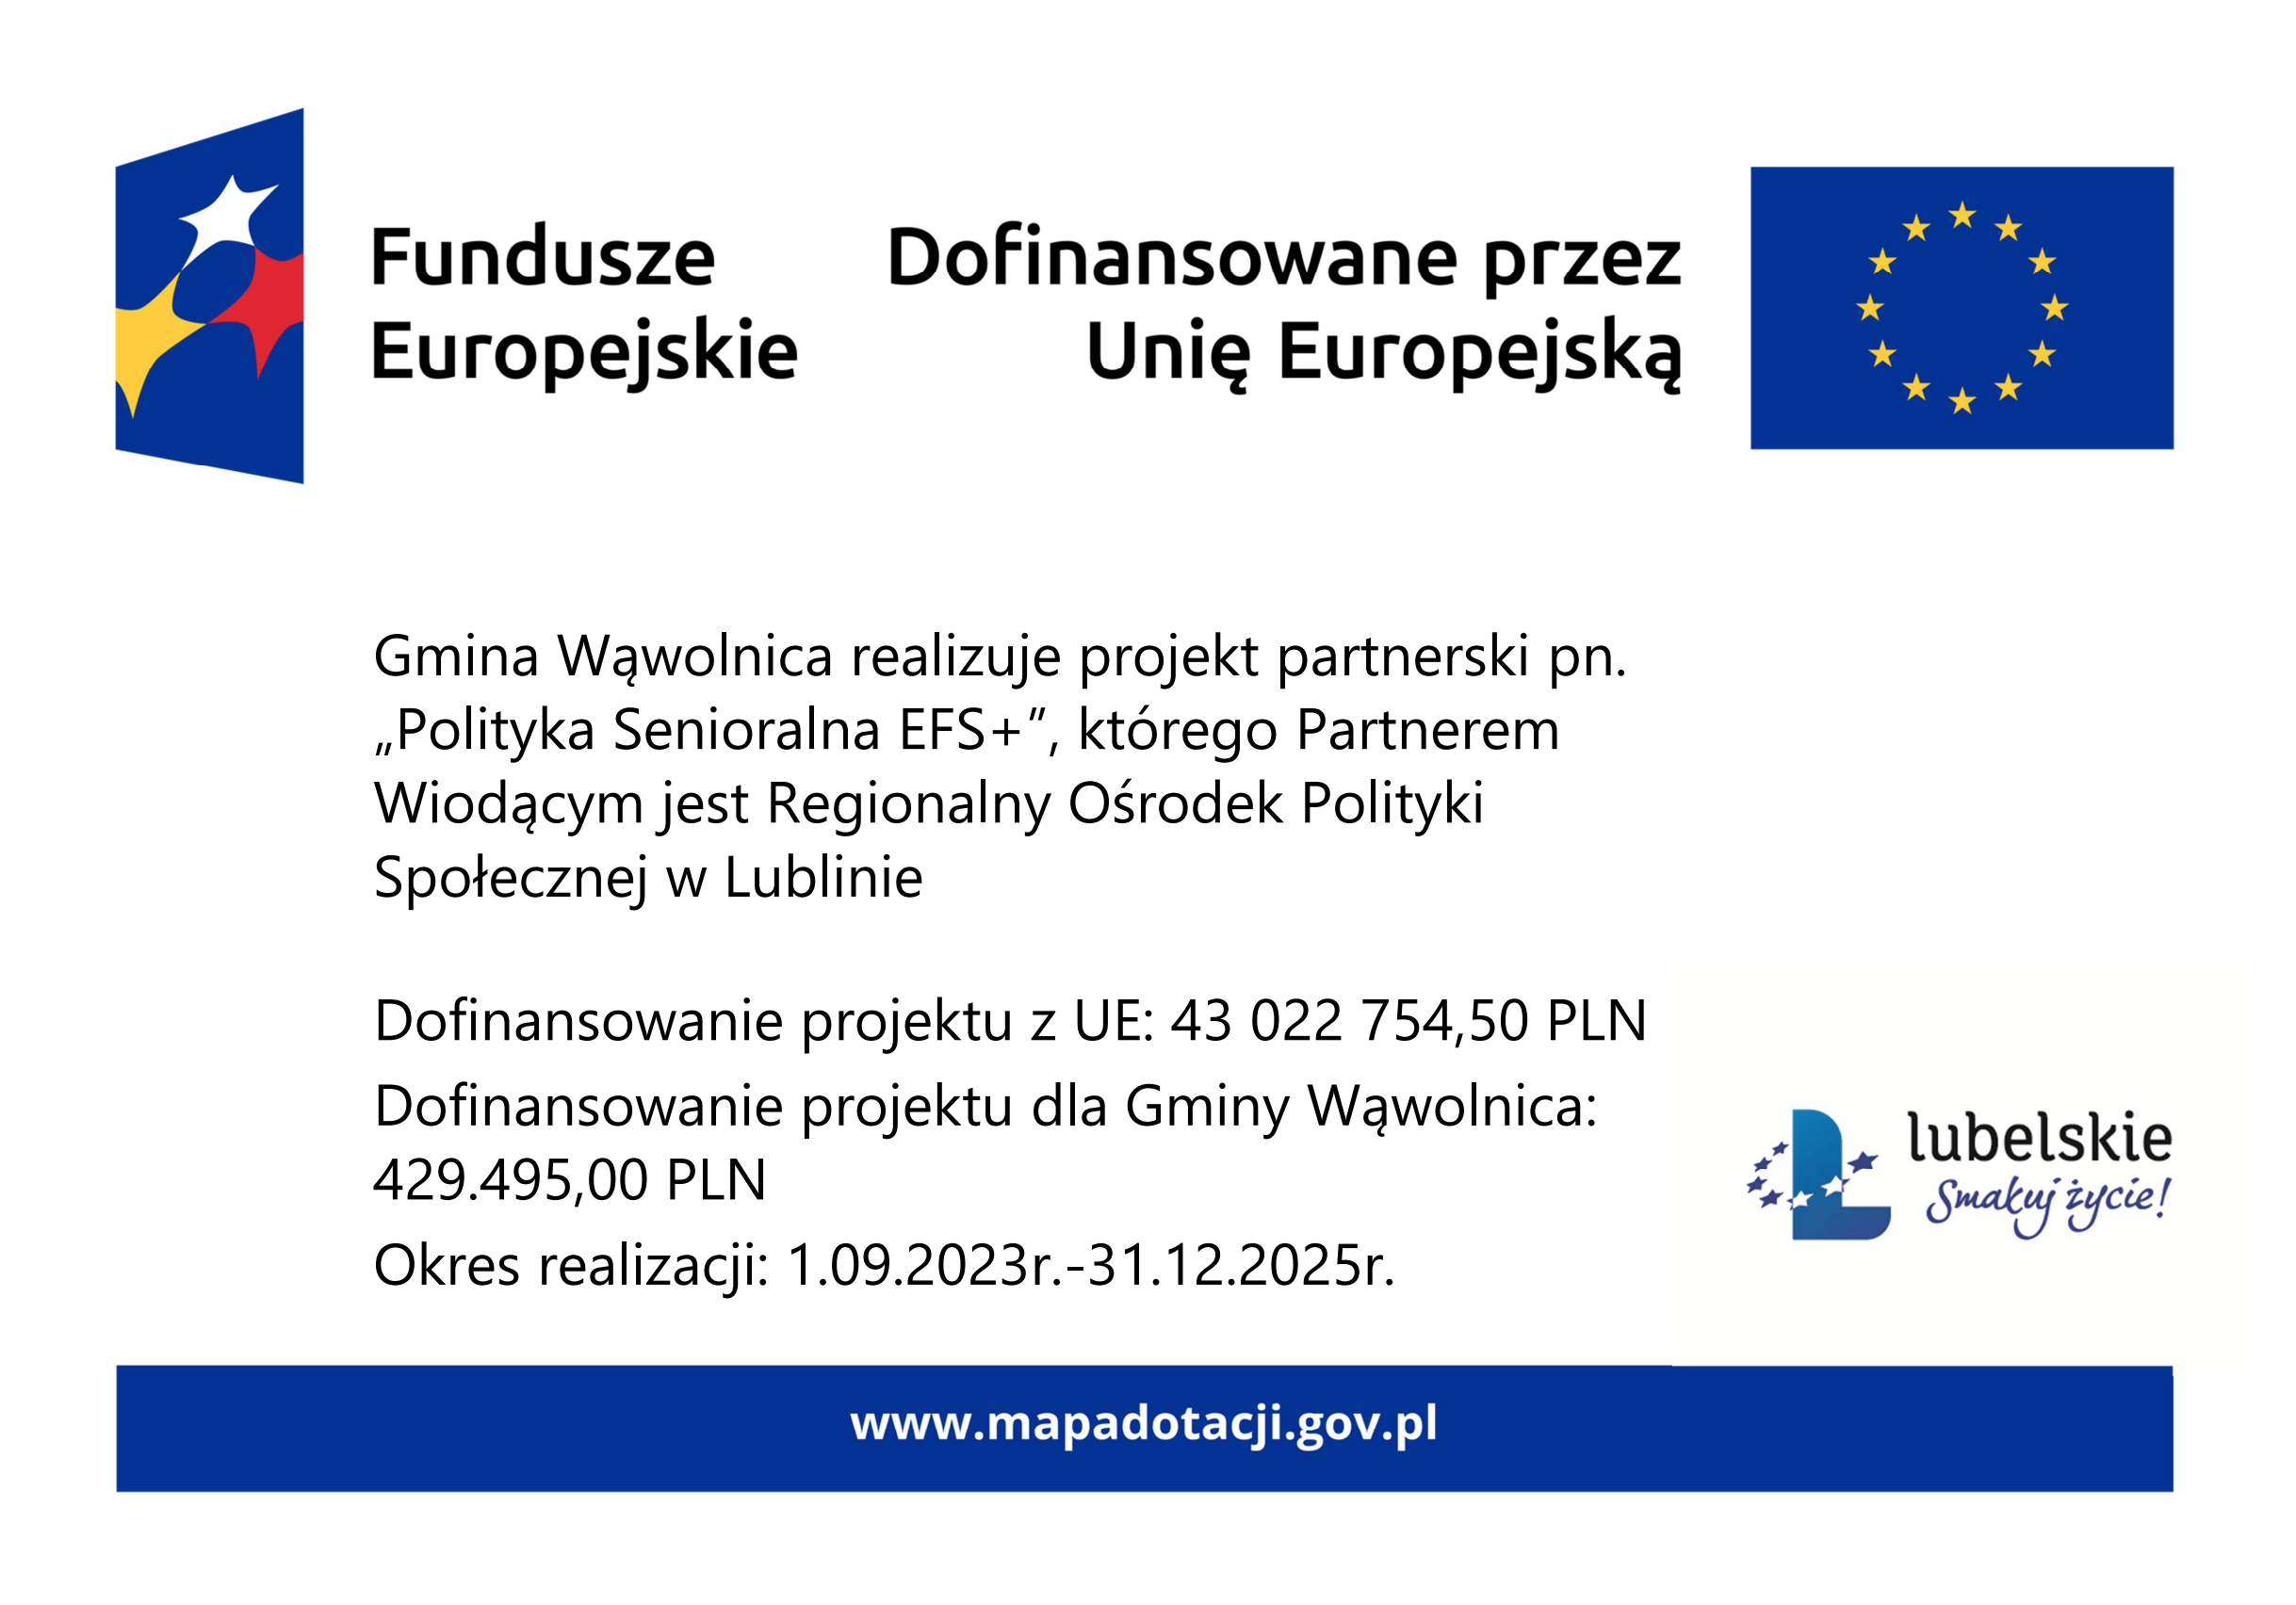 Opis alternatywny: Informacyjna grafika na niebieskim tle, zawierająca logo Funduszy Europejskich i Unii Europejskiej, komunikująca o dofinansowaniu, z danymi projektu i kwotą wsparcia.